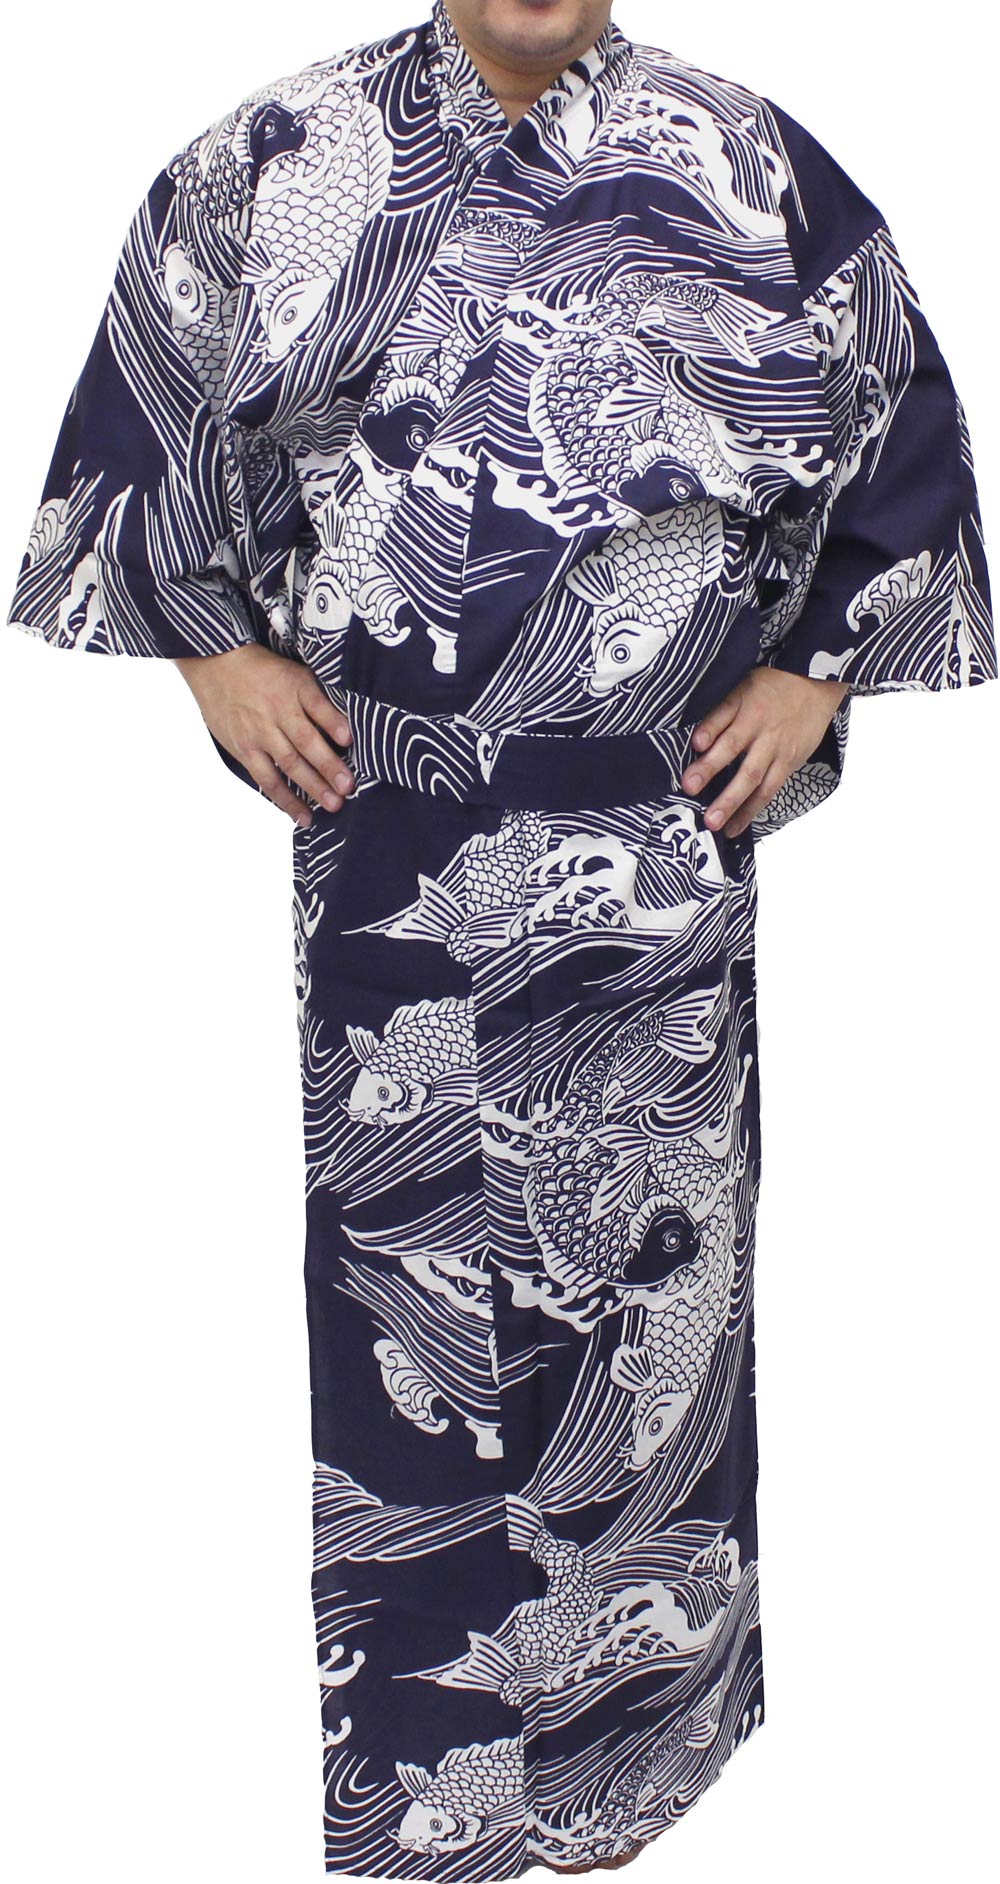 Men's Easy Yukata / Kimono Robe : Japanese Traditional Clothes - Robe Koi Fish Navy